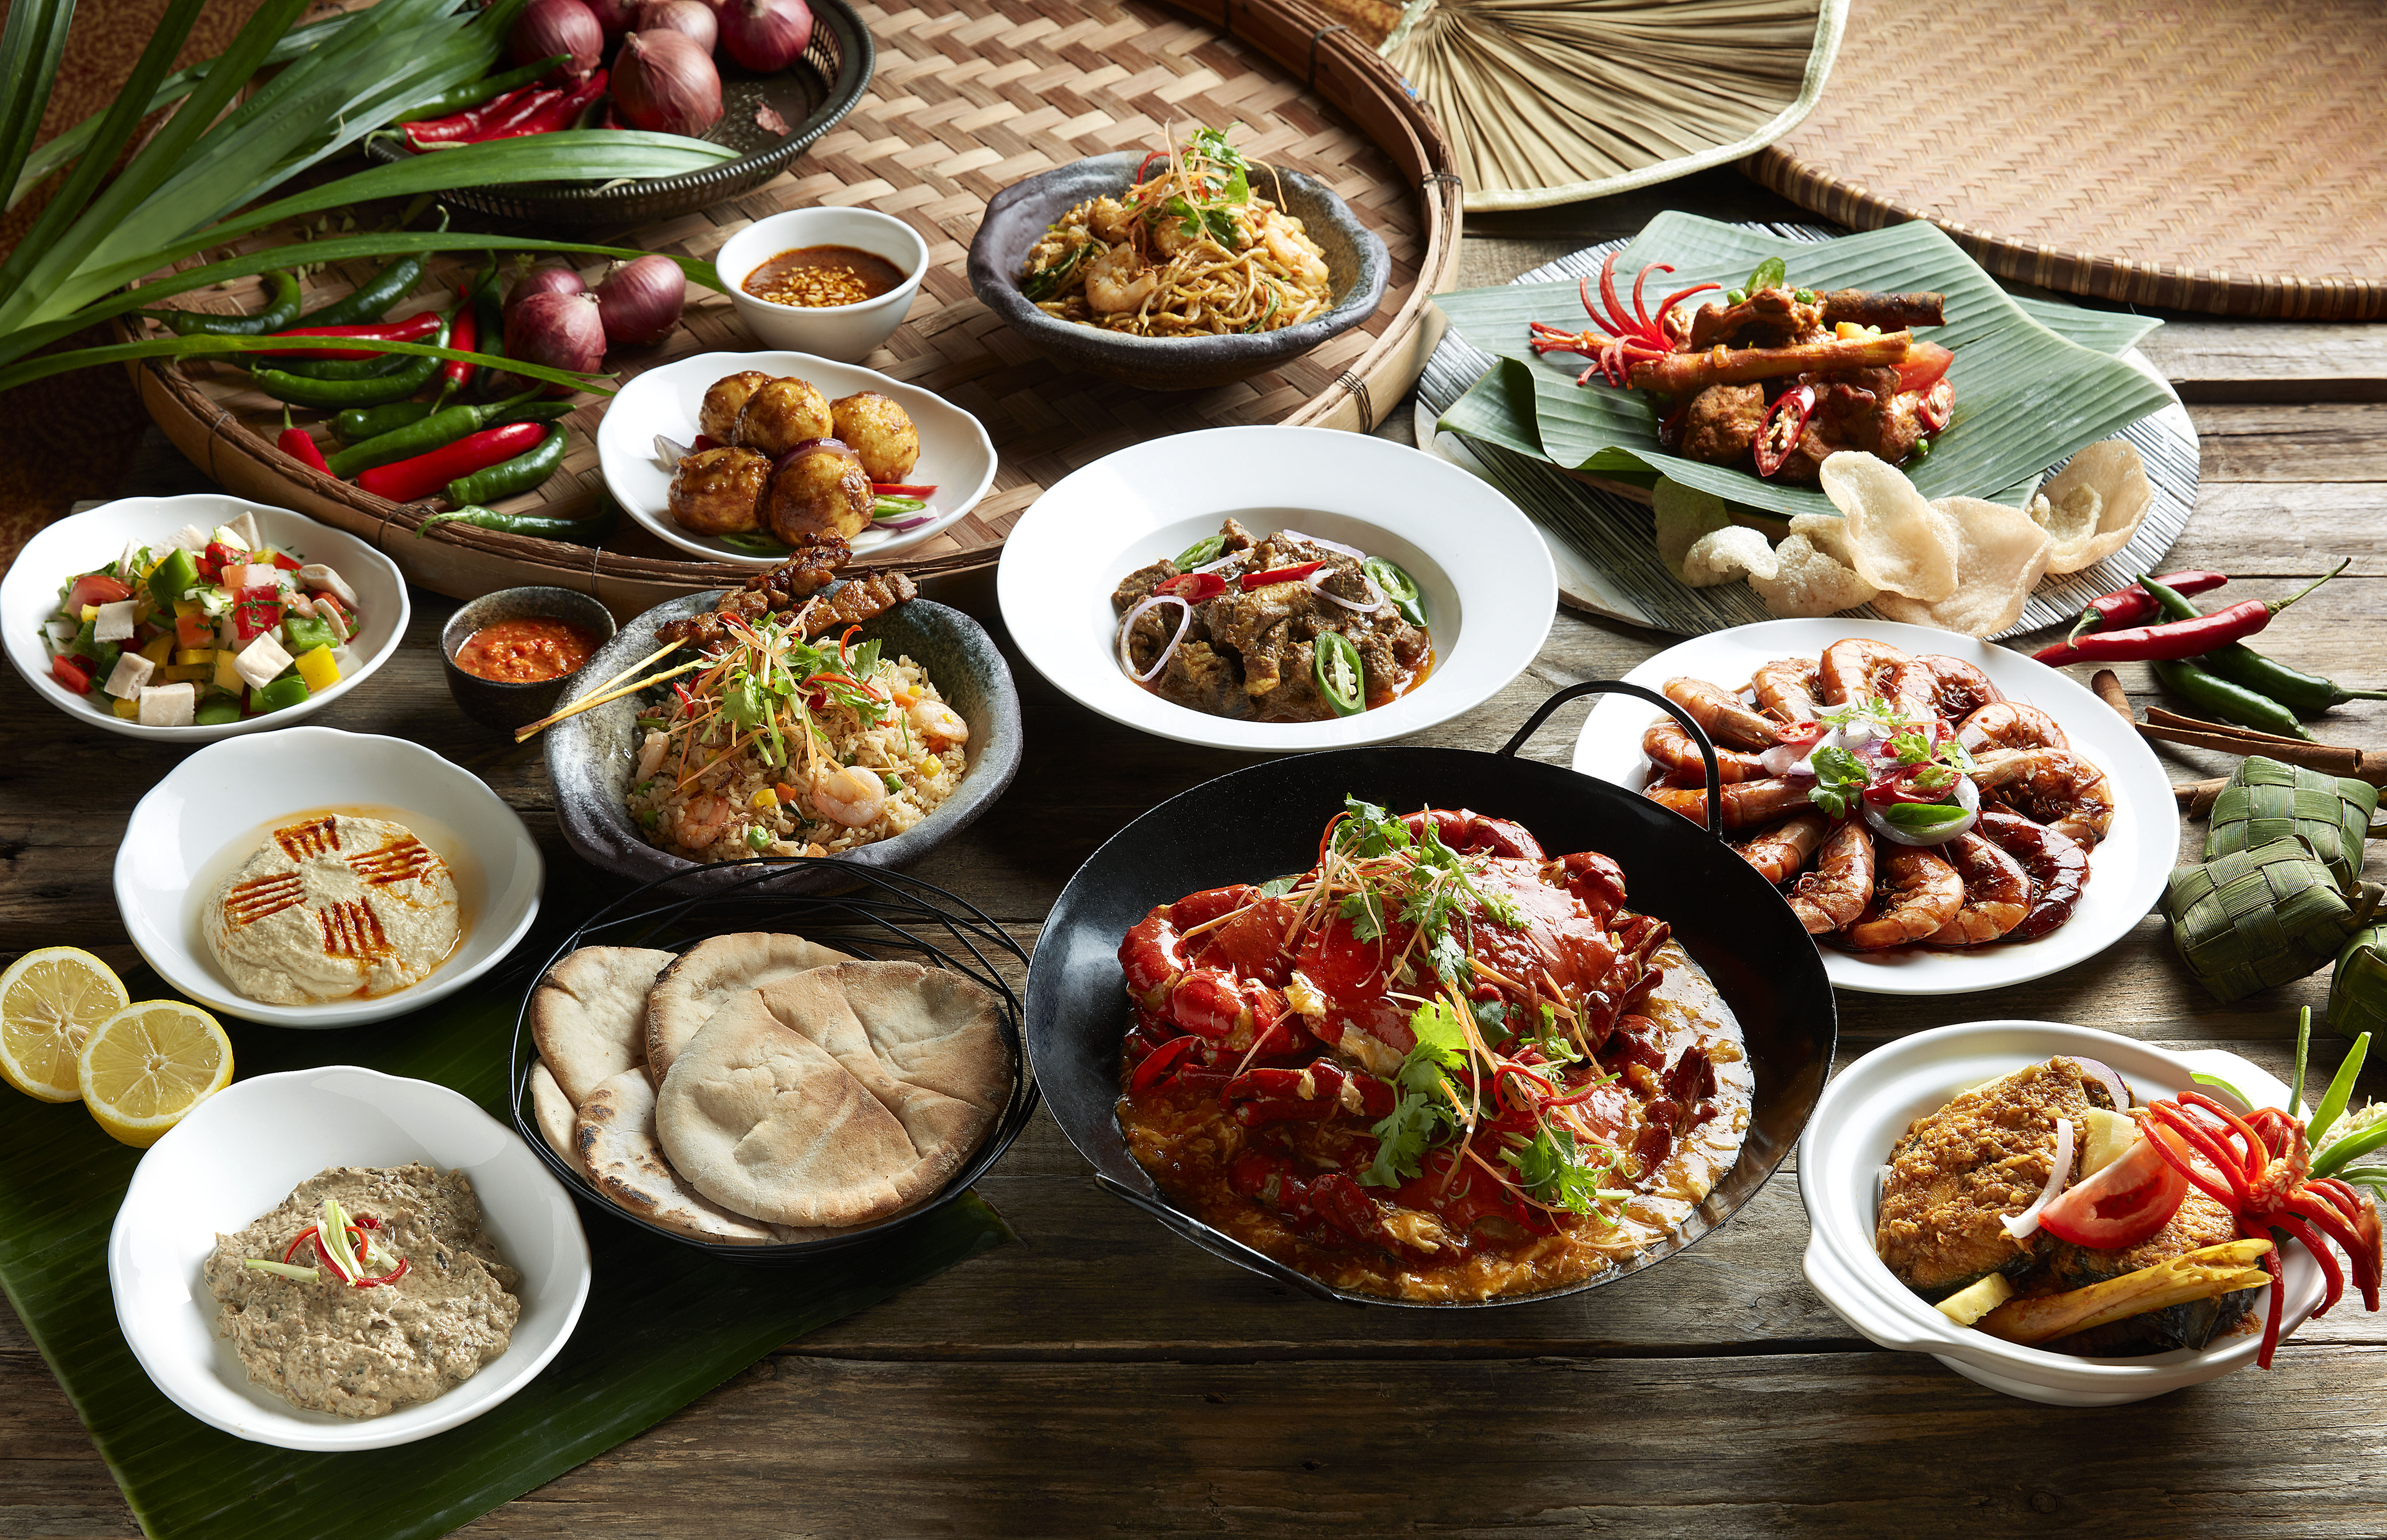 Ramadan 17 Halal Buffet Spreads For Iftar 19 The Halal Food Blog